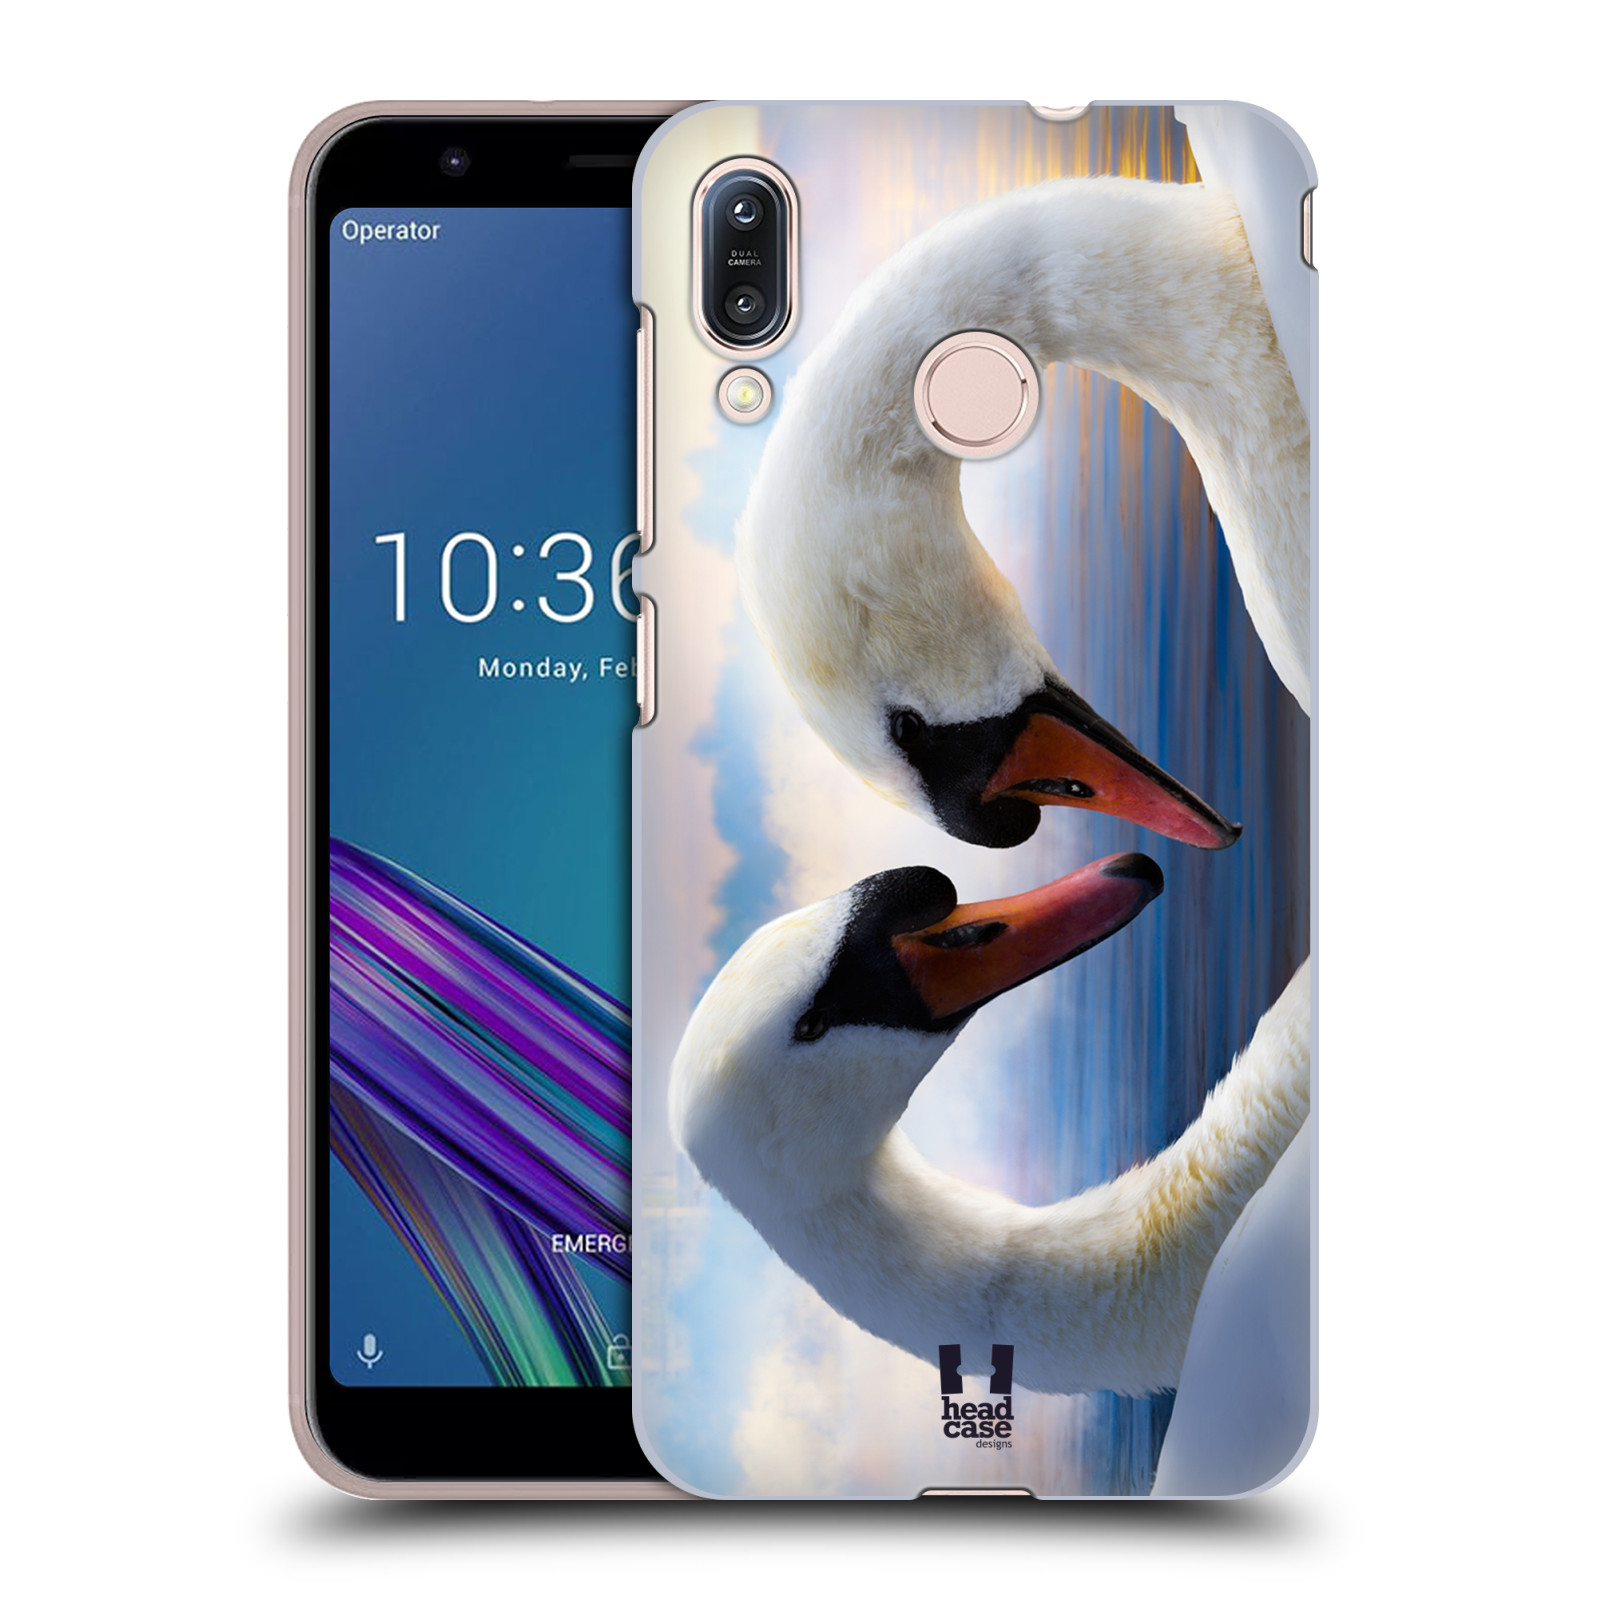 Pouzdro na mobil Asus Zenfone Max M1 (ZB555KL) - HEAD CASE - vzor Divočina, Divoký život a zvířata foto ZAMILOVANÉ LABUTĚ, LÁSKA